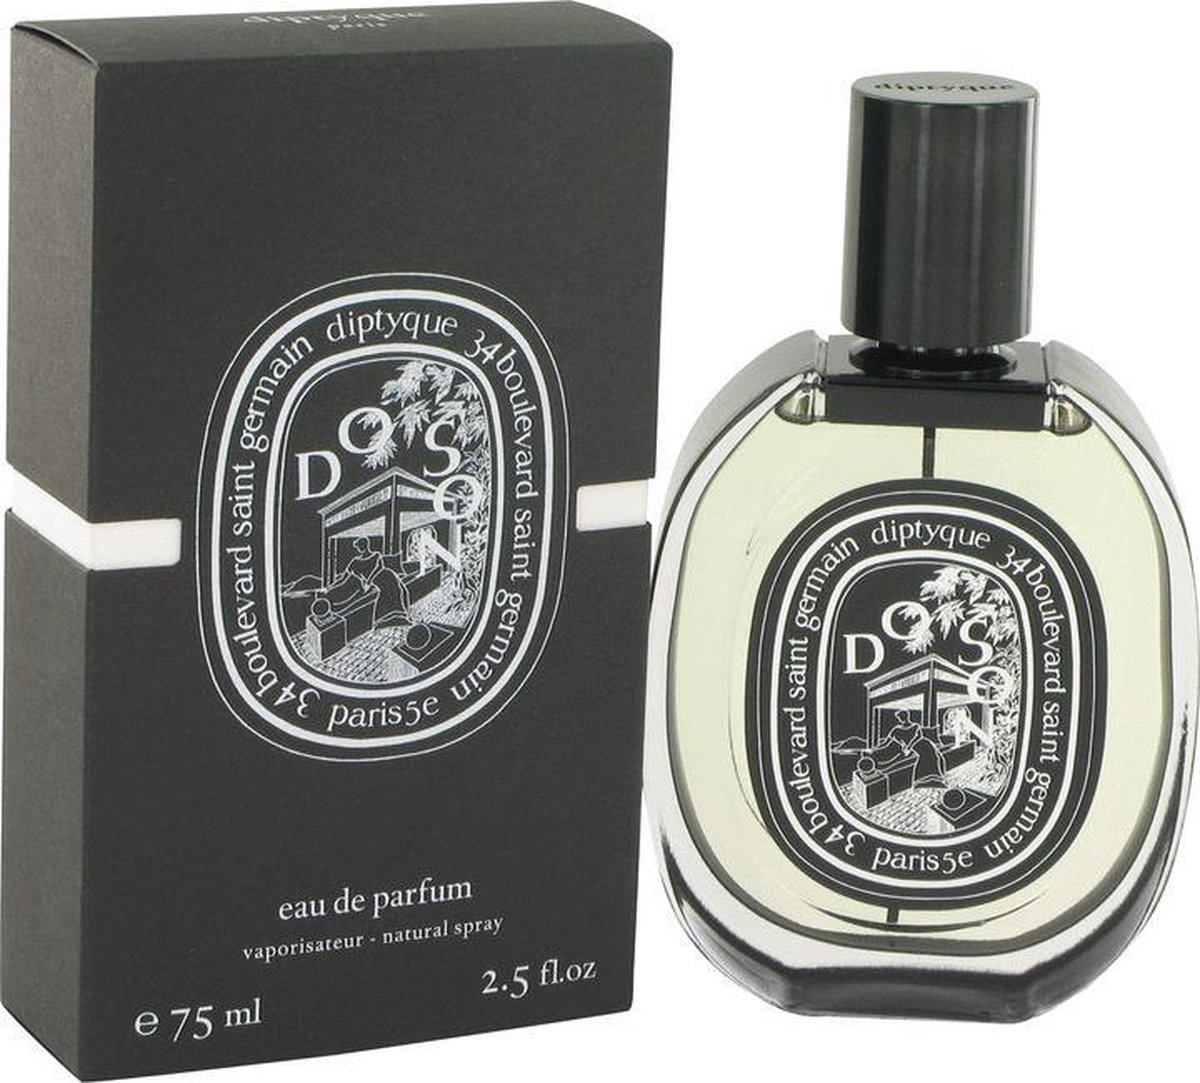 Diptyque Do Son - Eau de parfum spray - 75 ml